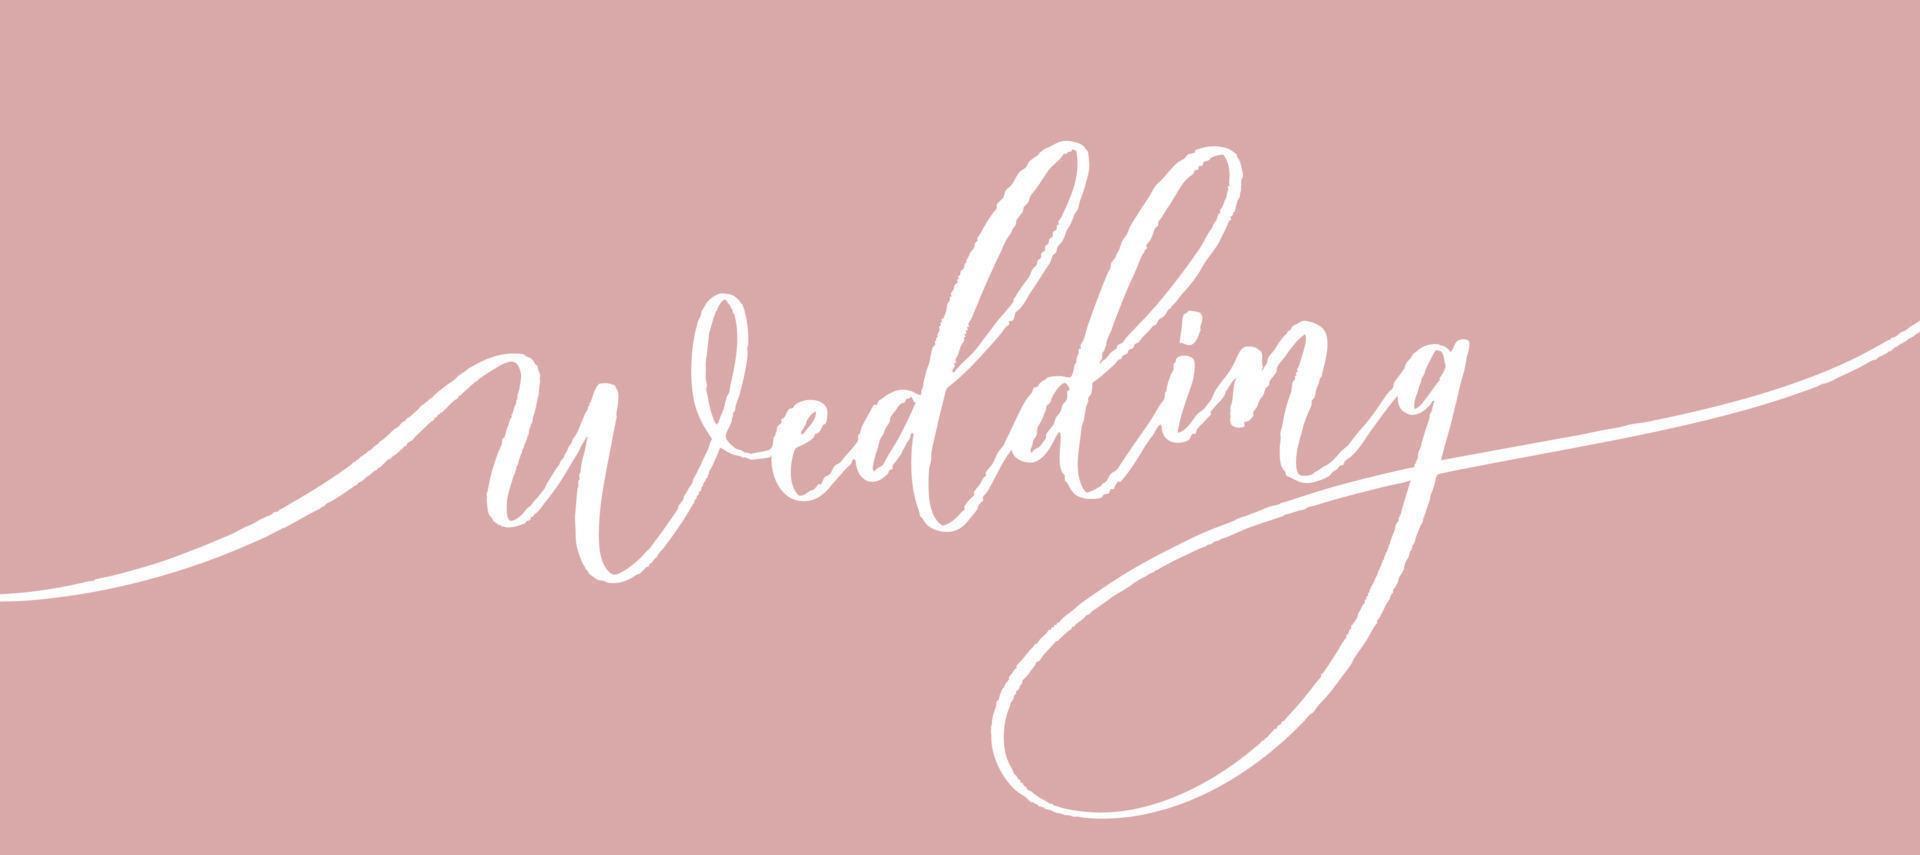 boda - inscripción caligráfica para álbum, portadas. vector